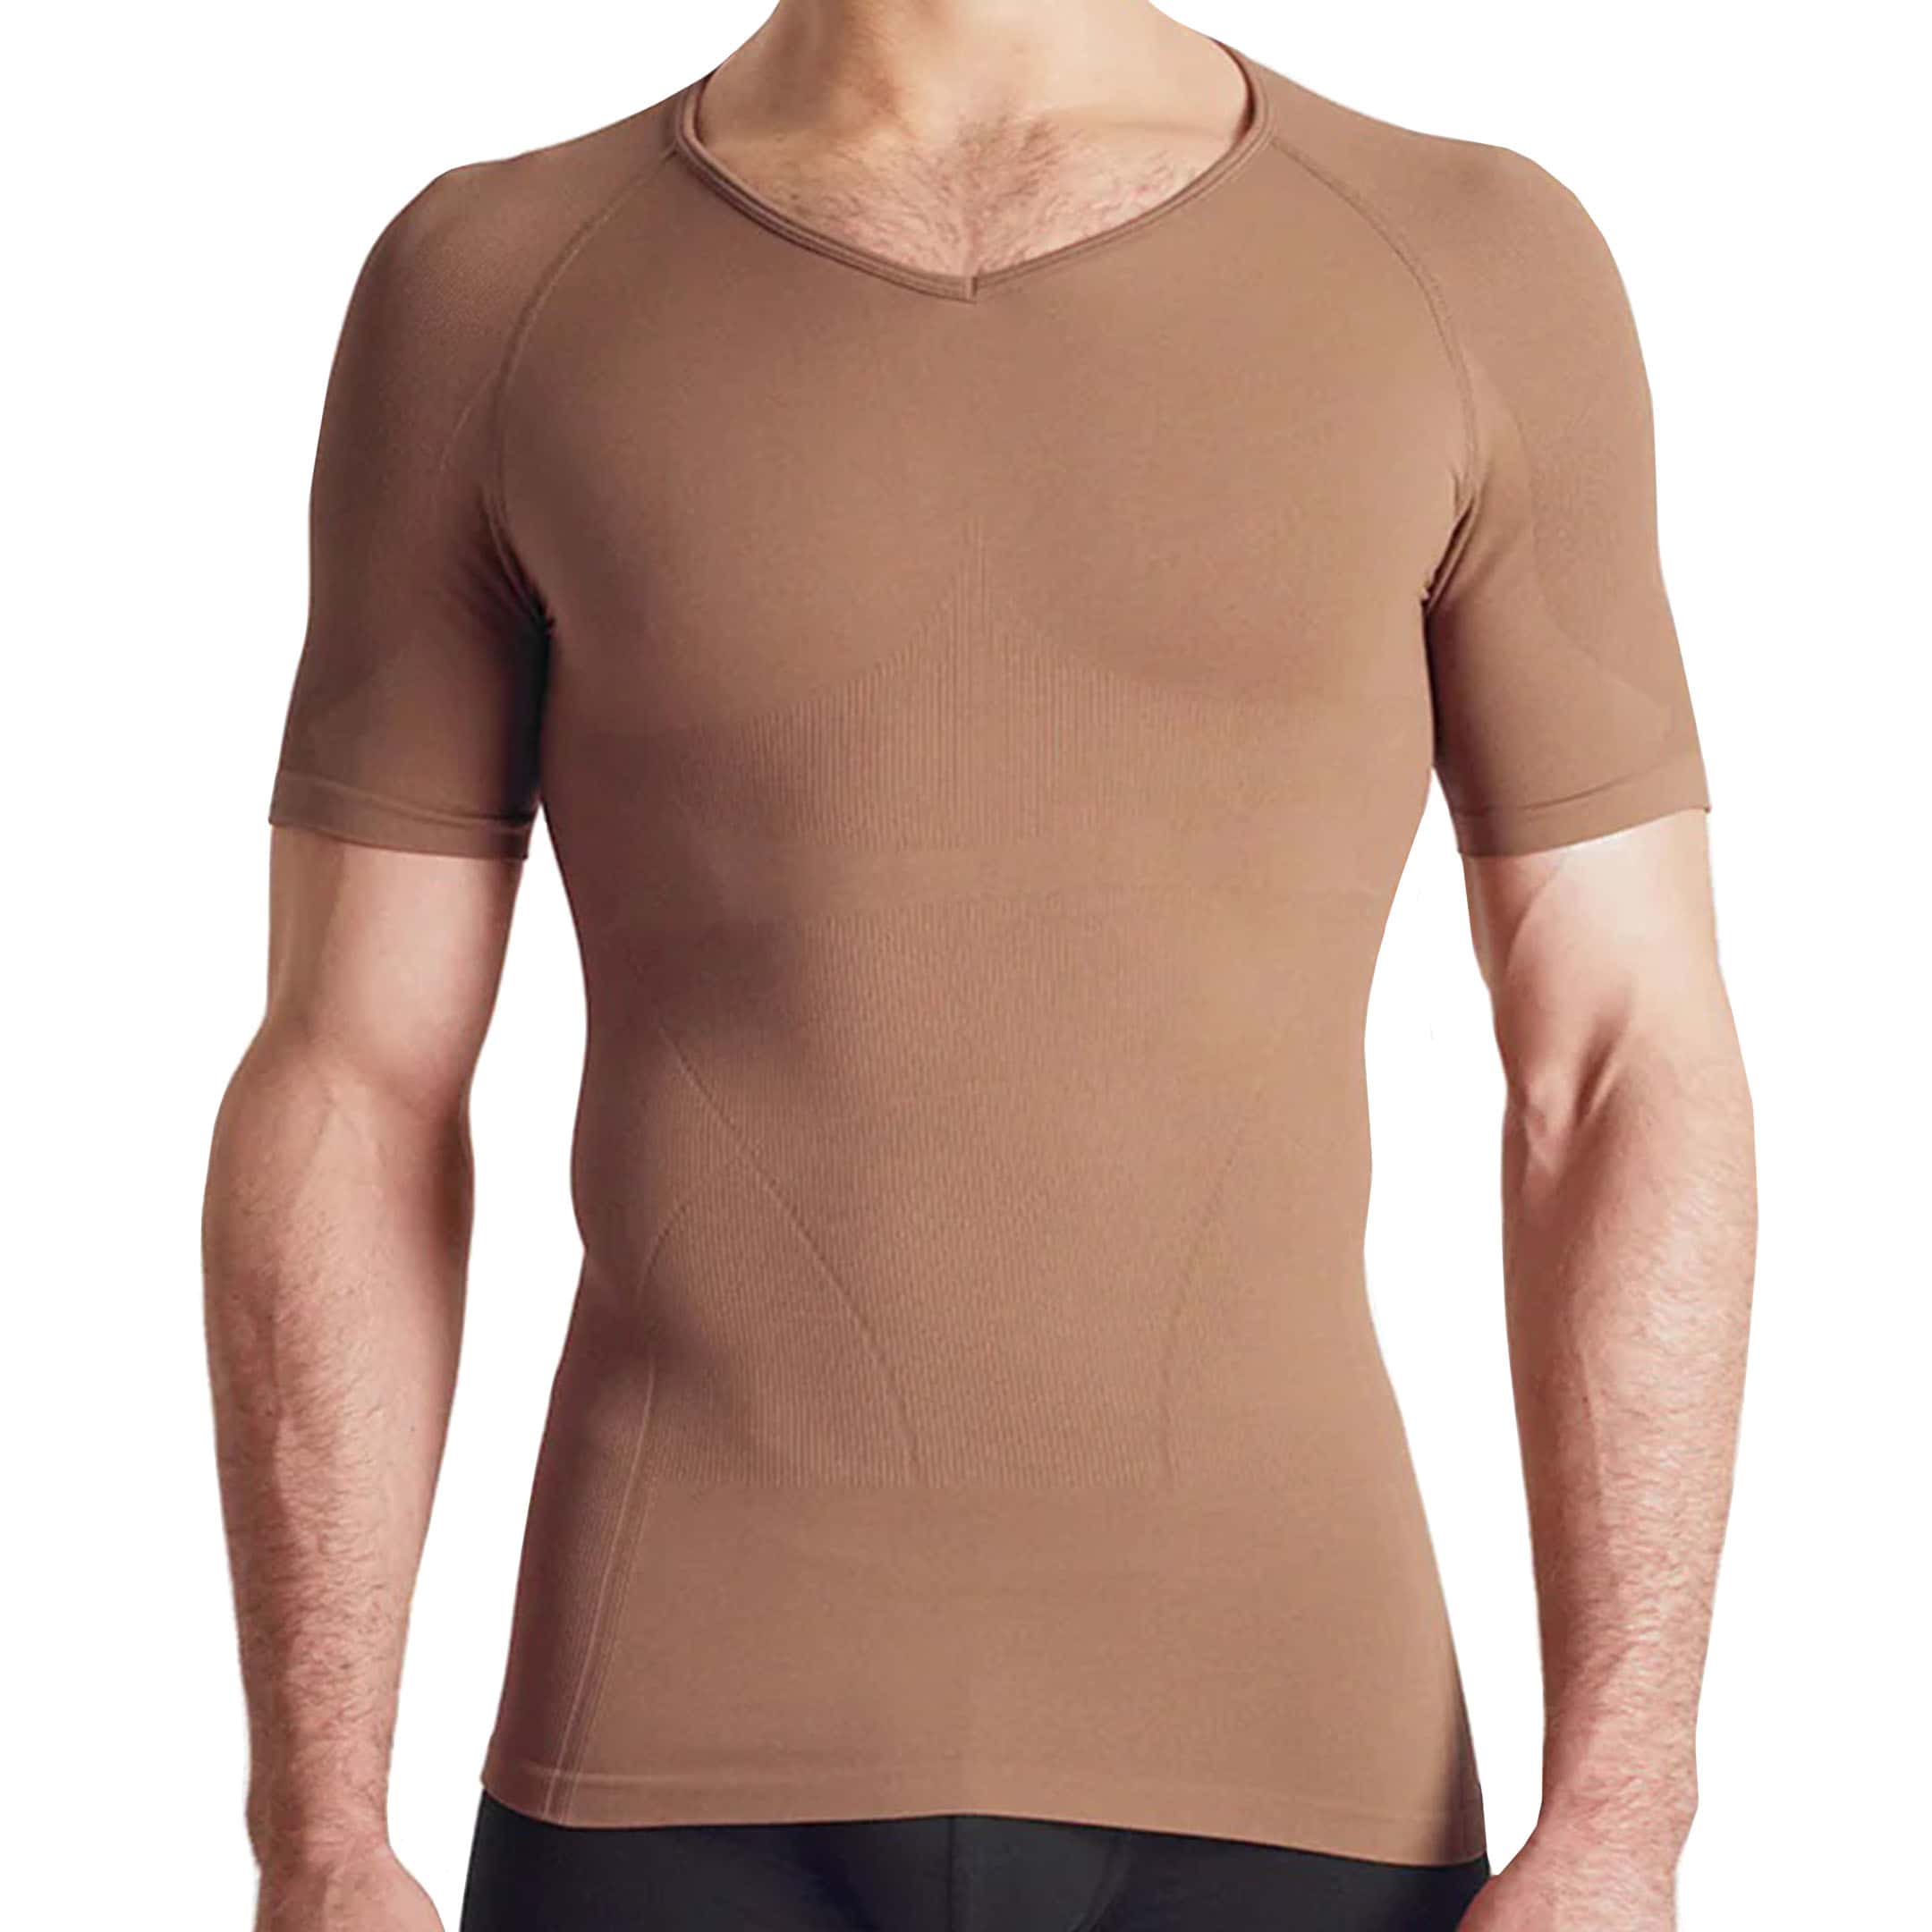 Rounderbum Seamless Compression T-Shirt - Cacoa